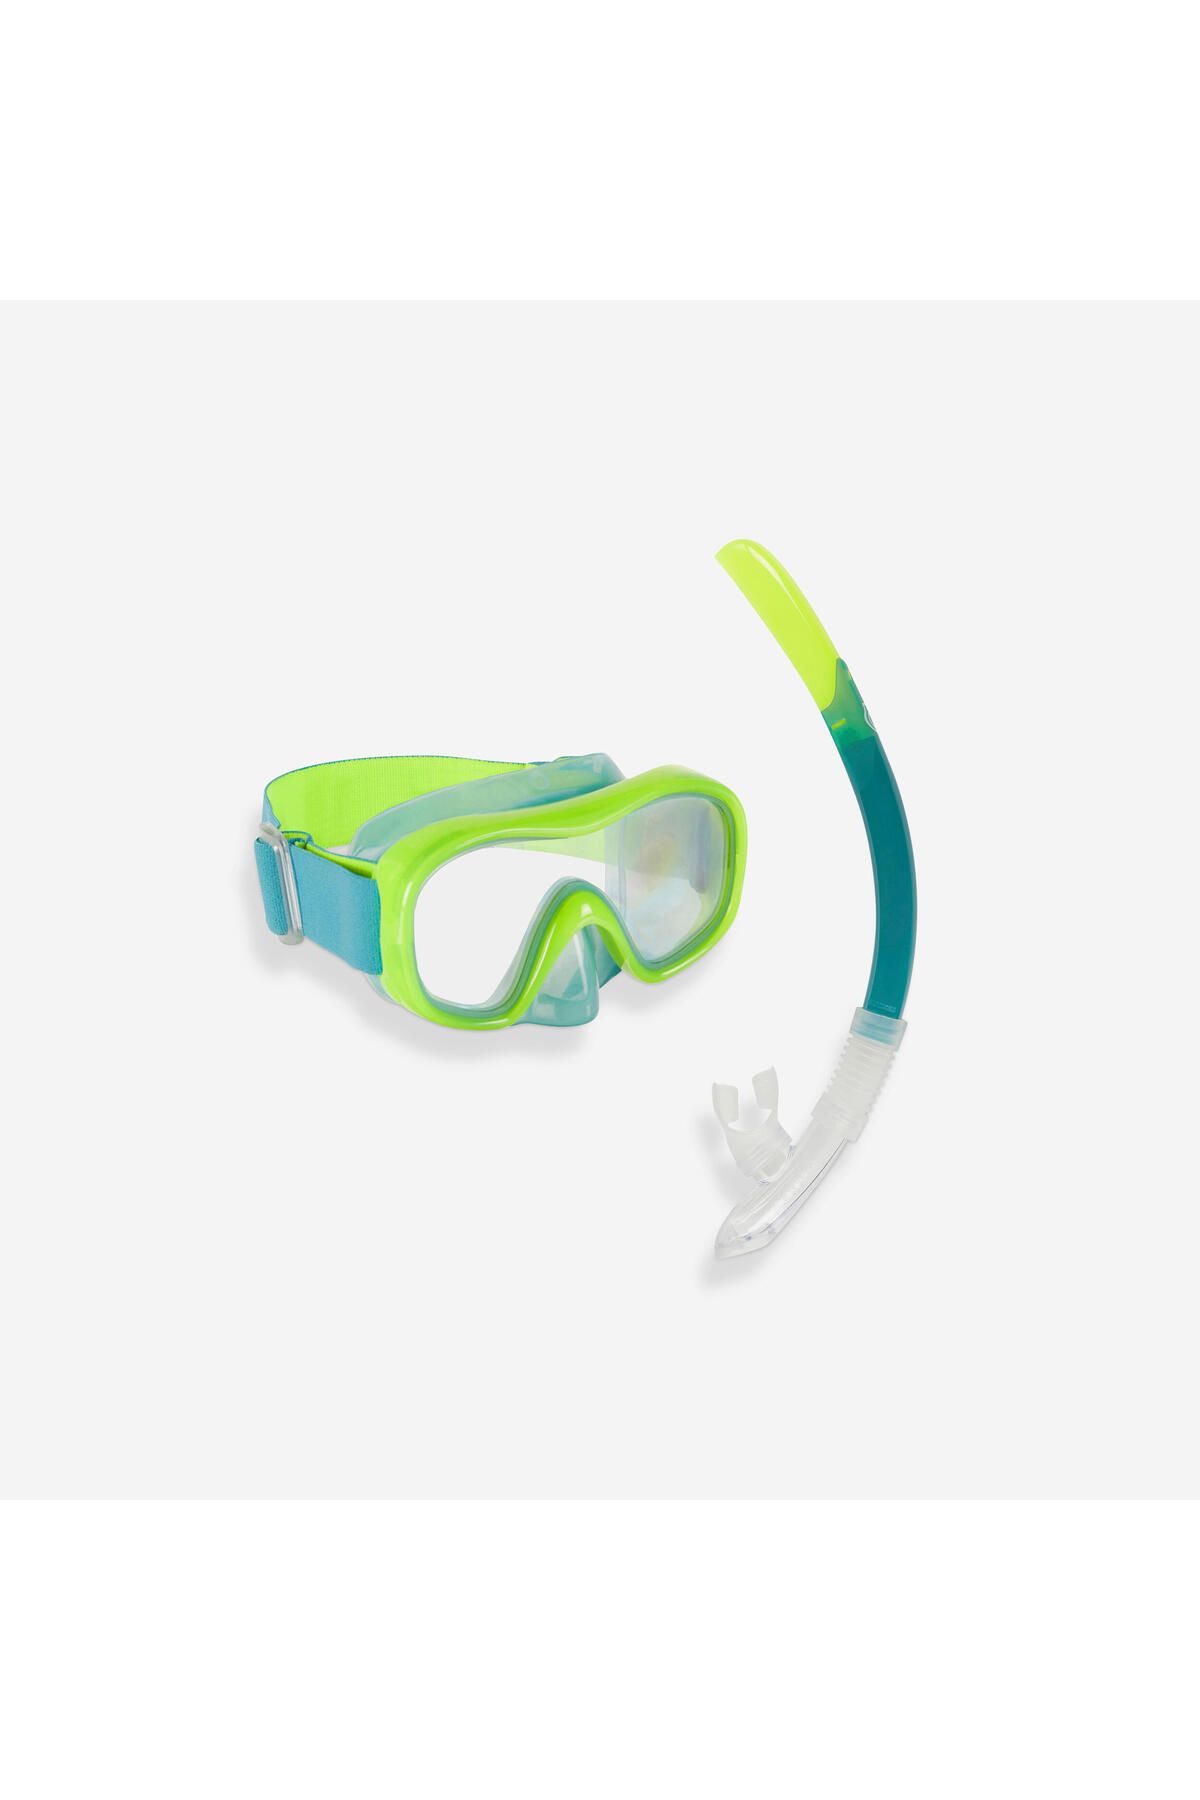 Decathlon Çocuk Şnorkelle Dalış Seti - Neon Yeşil - 100 Valve